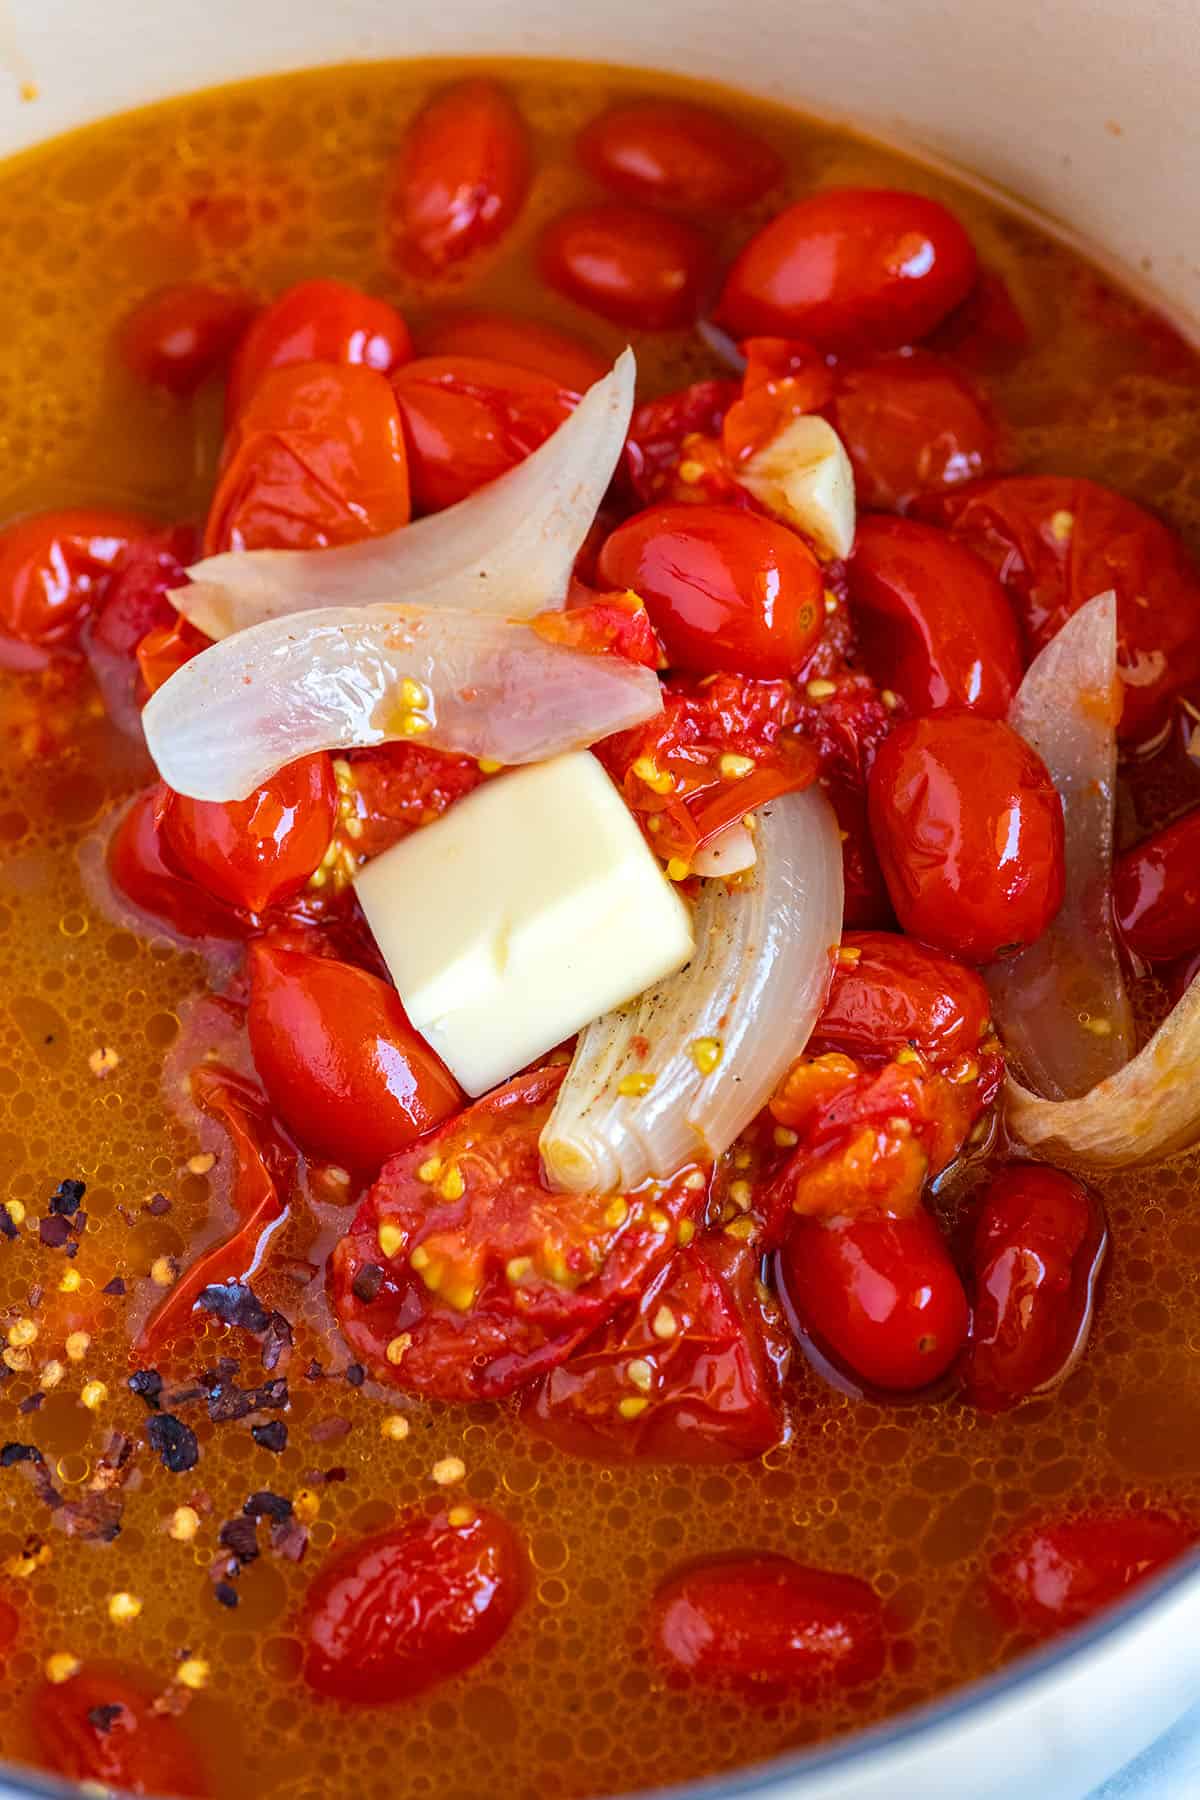 Göra rostad tomatsoppa.  Rostade tomater med buljong i en soppgryta.